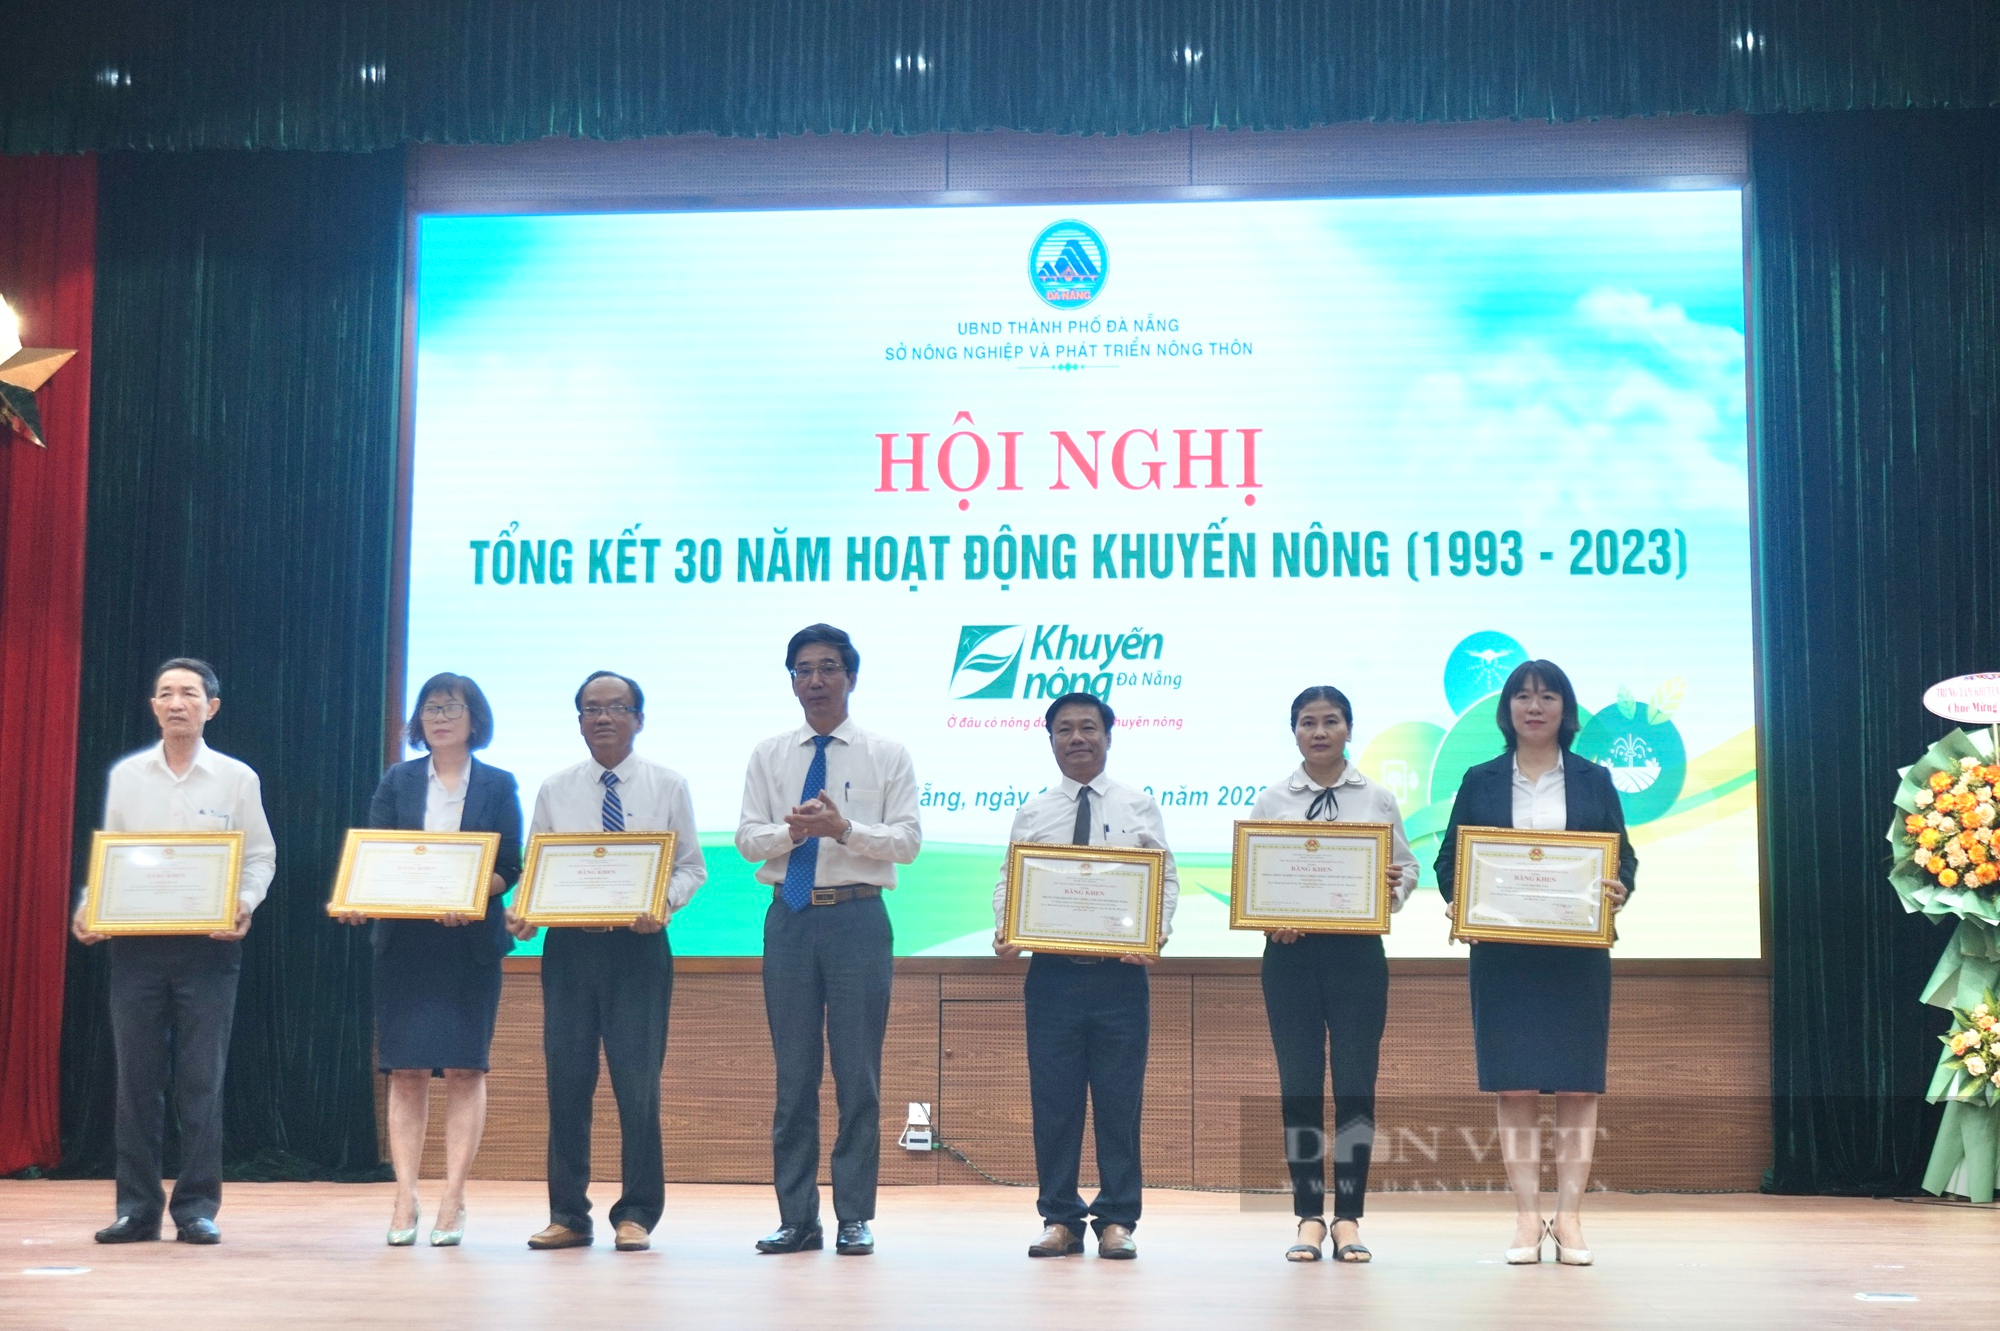 Trung tâm Khuyến ngư nông lâm Đà Nẵng tổng kết 30 năm sát cánh cùng nhà nông - Ảnh 8.